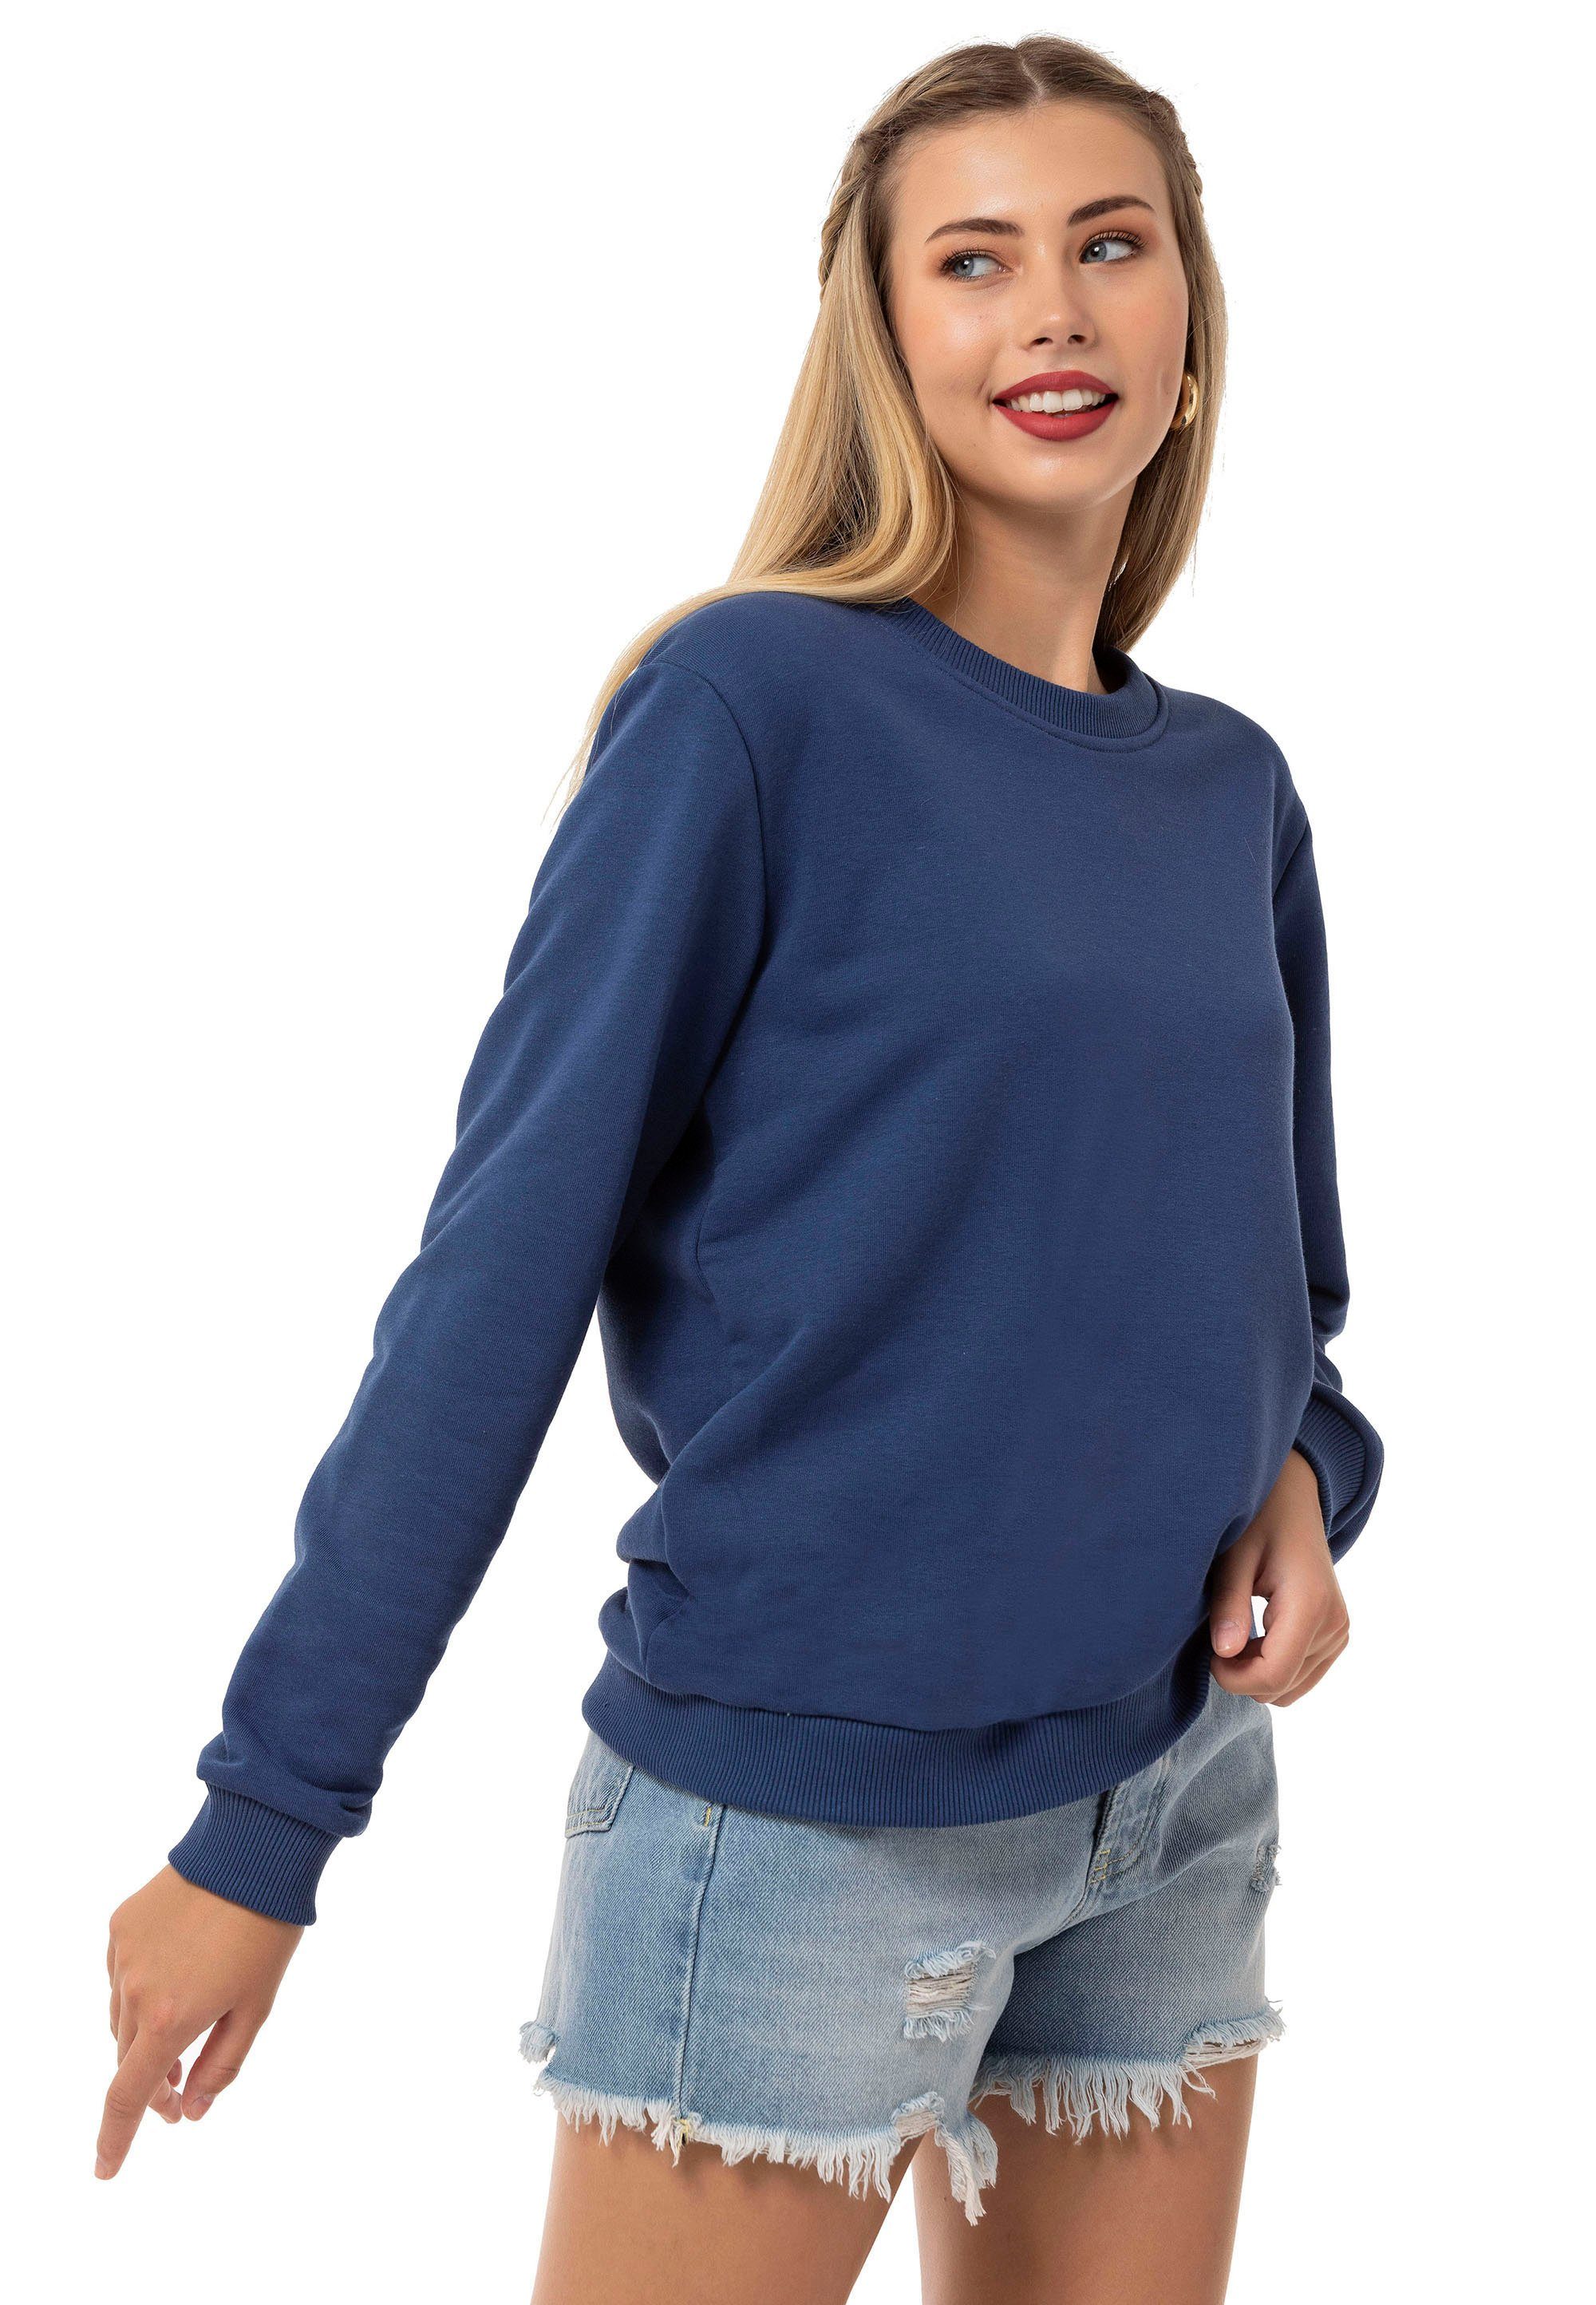 RedBridge Sweatshirt Premium Indigo Pullover Qualität Rundhals